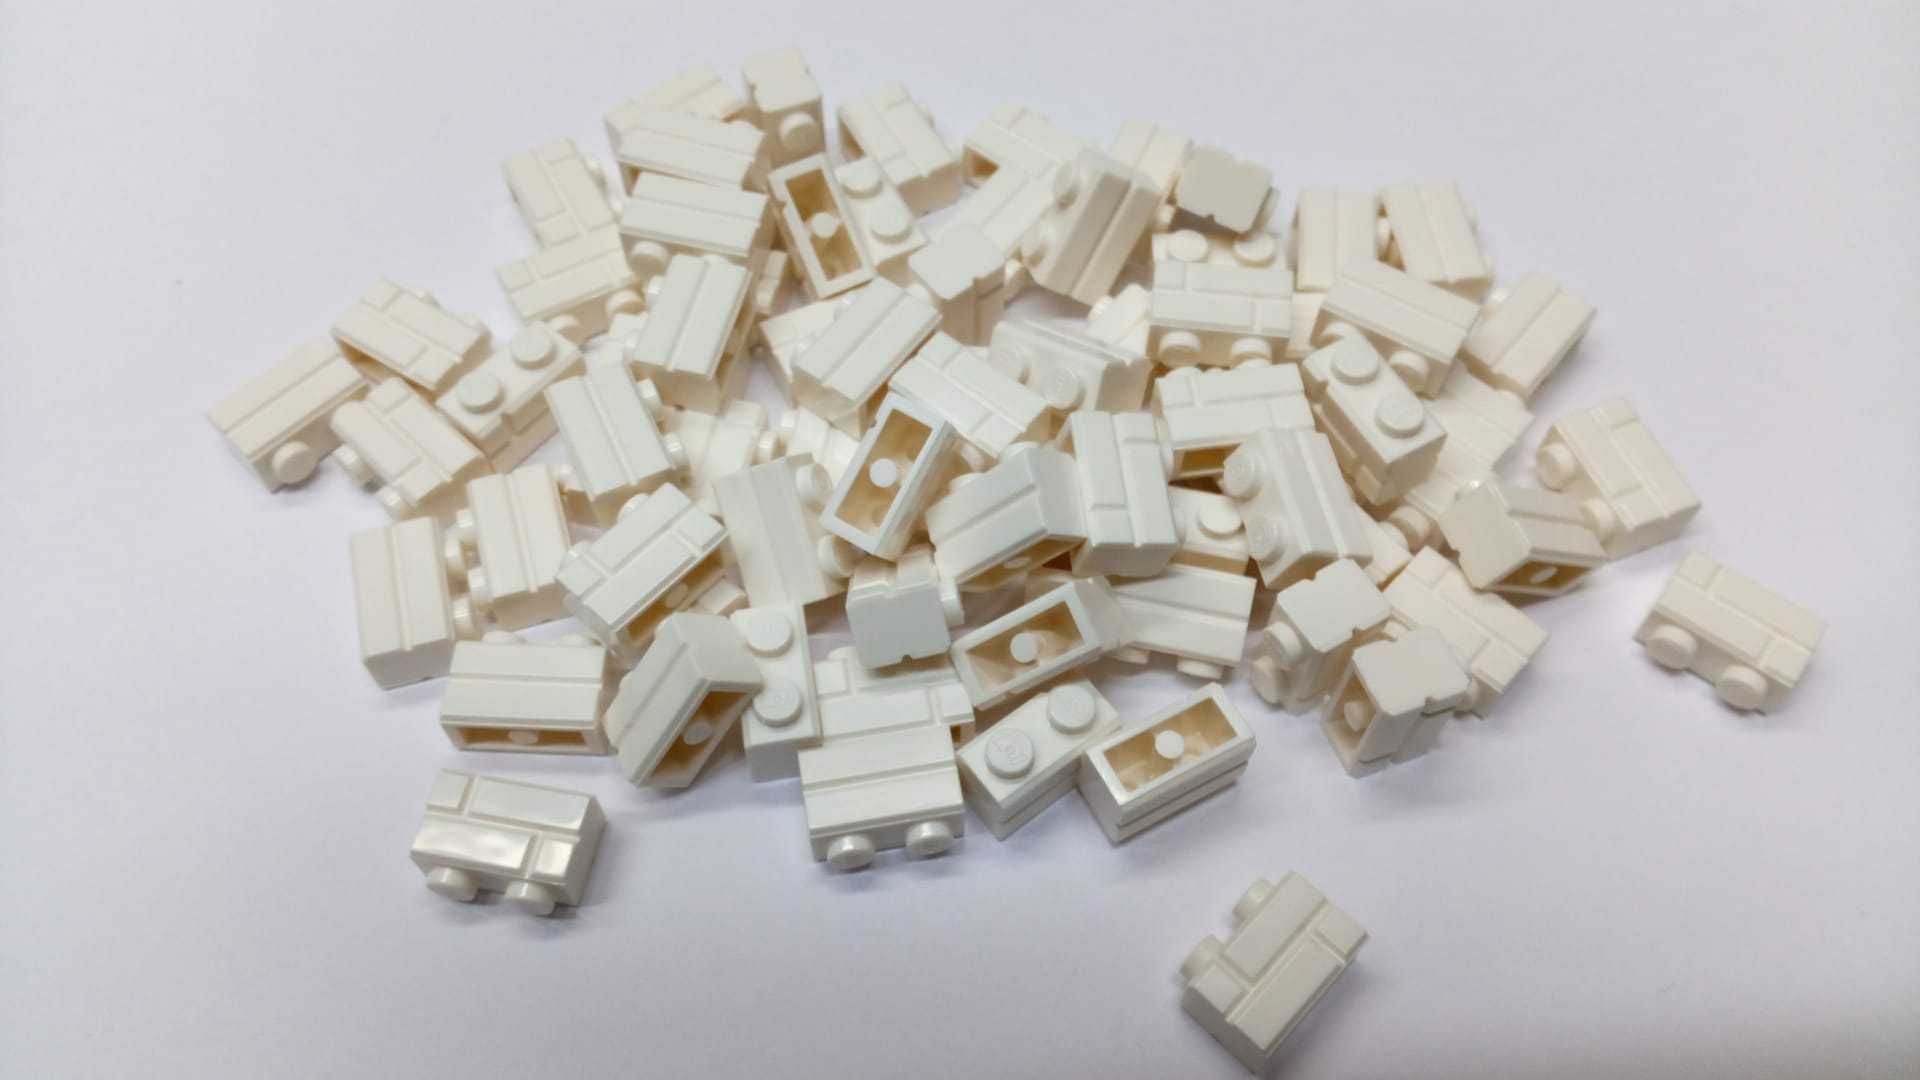 Klocki LEGO - cegiełki białe 1x2 - 300 sztuk